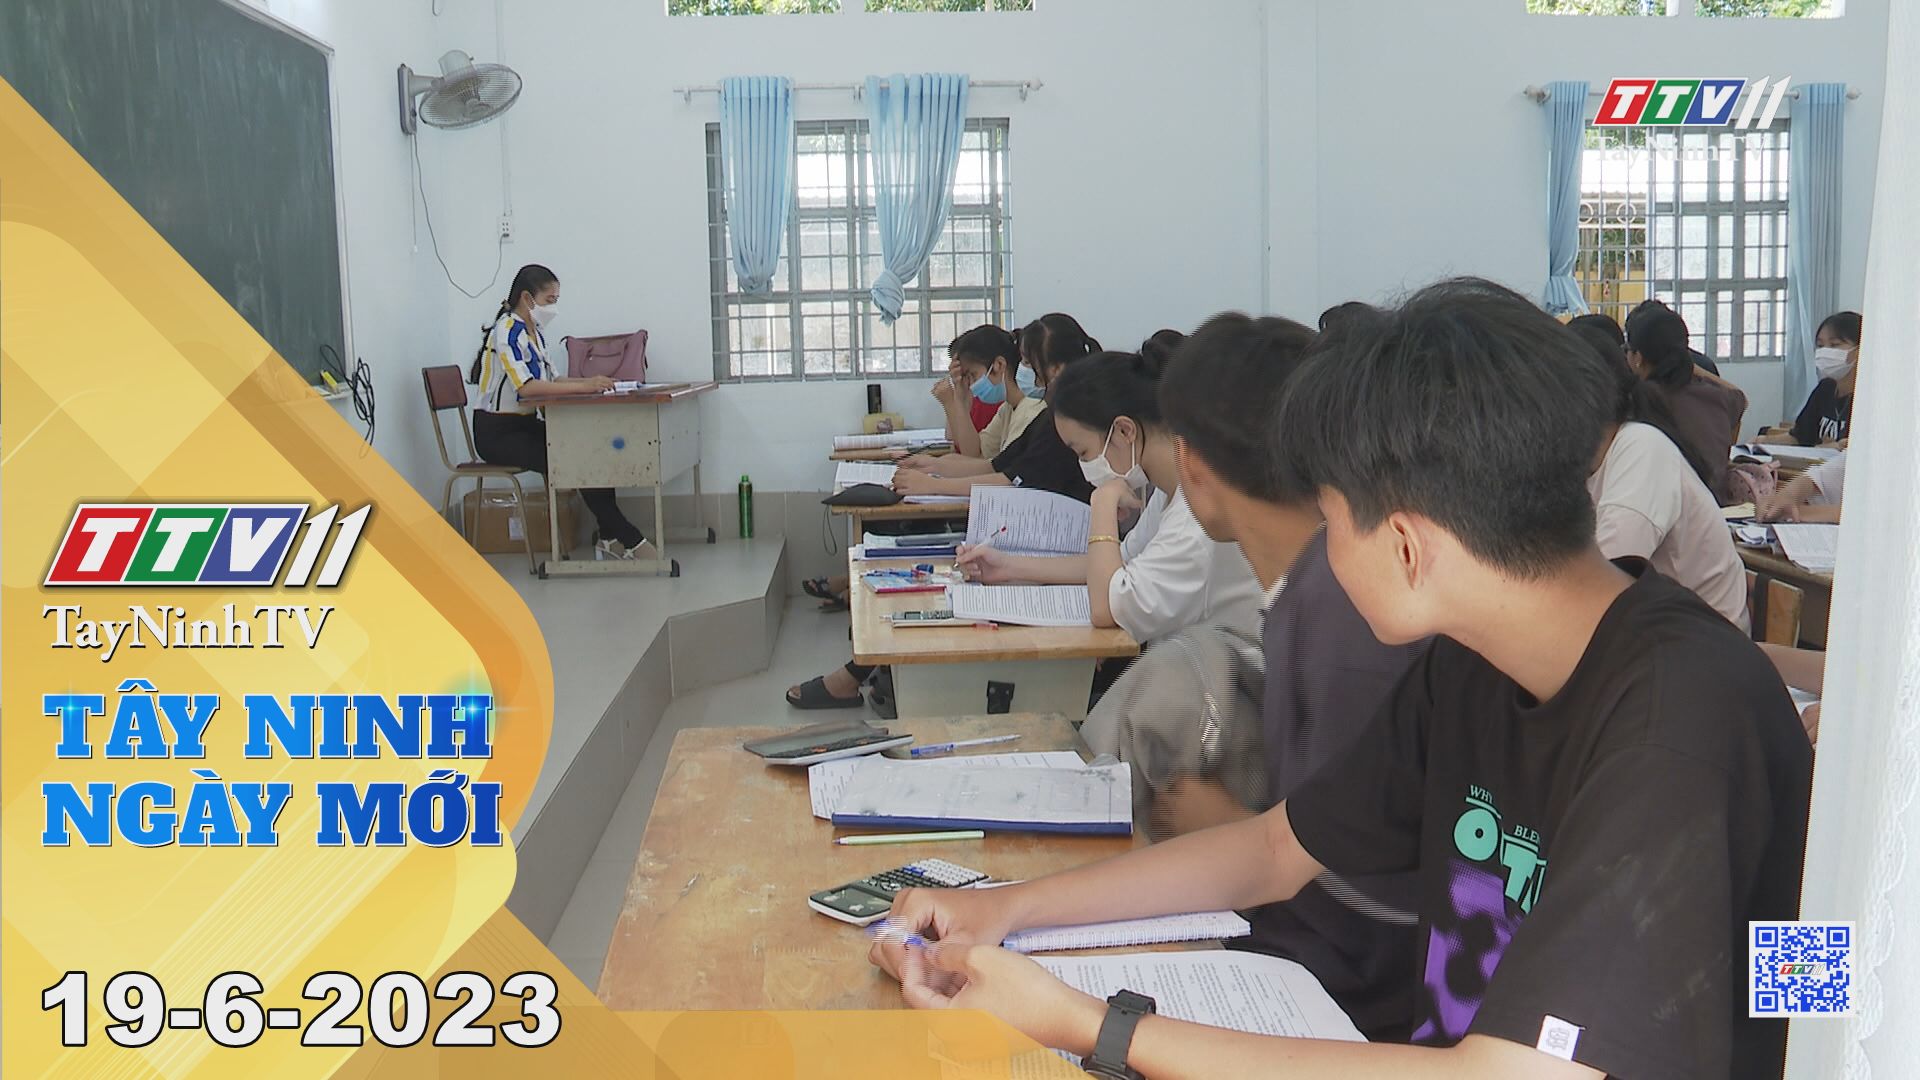 Tây Ninh ngày mới 19-6-2023 | Tin tức hôm nay | TayNinhTV